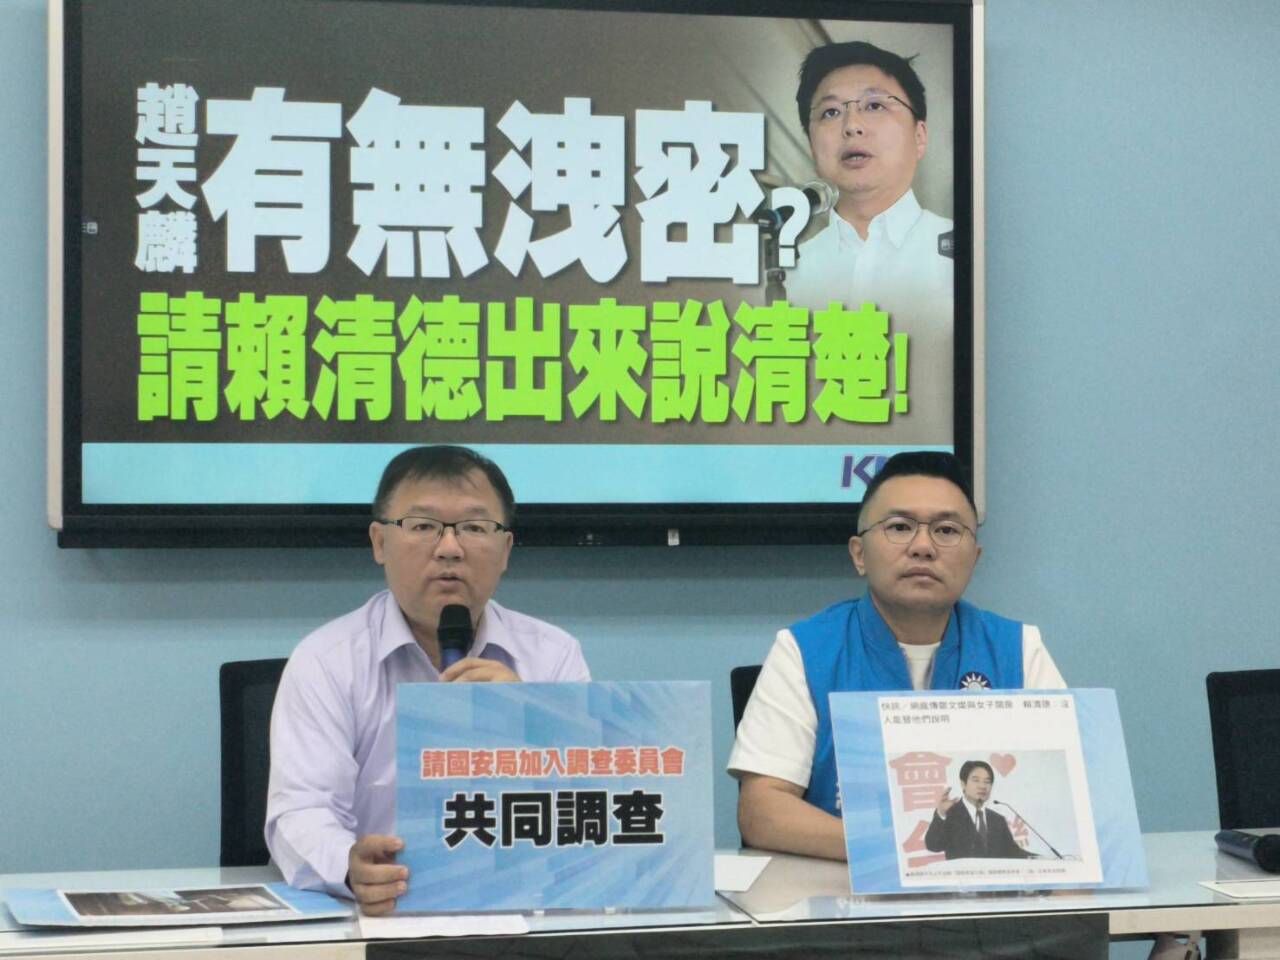 趙天麟婚外情退選 國民黨團要求調查是否洩密